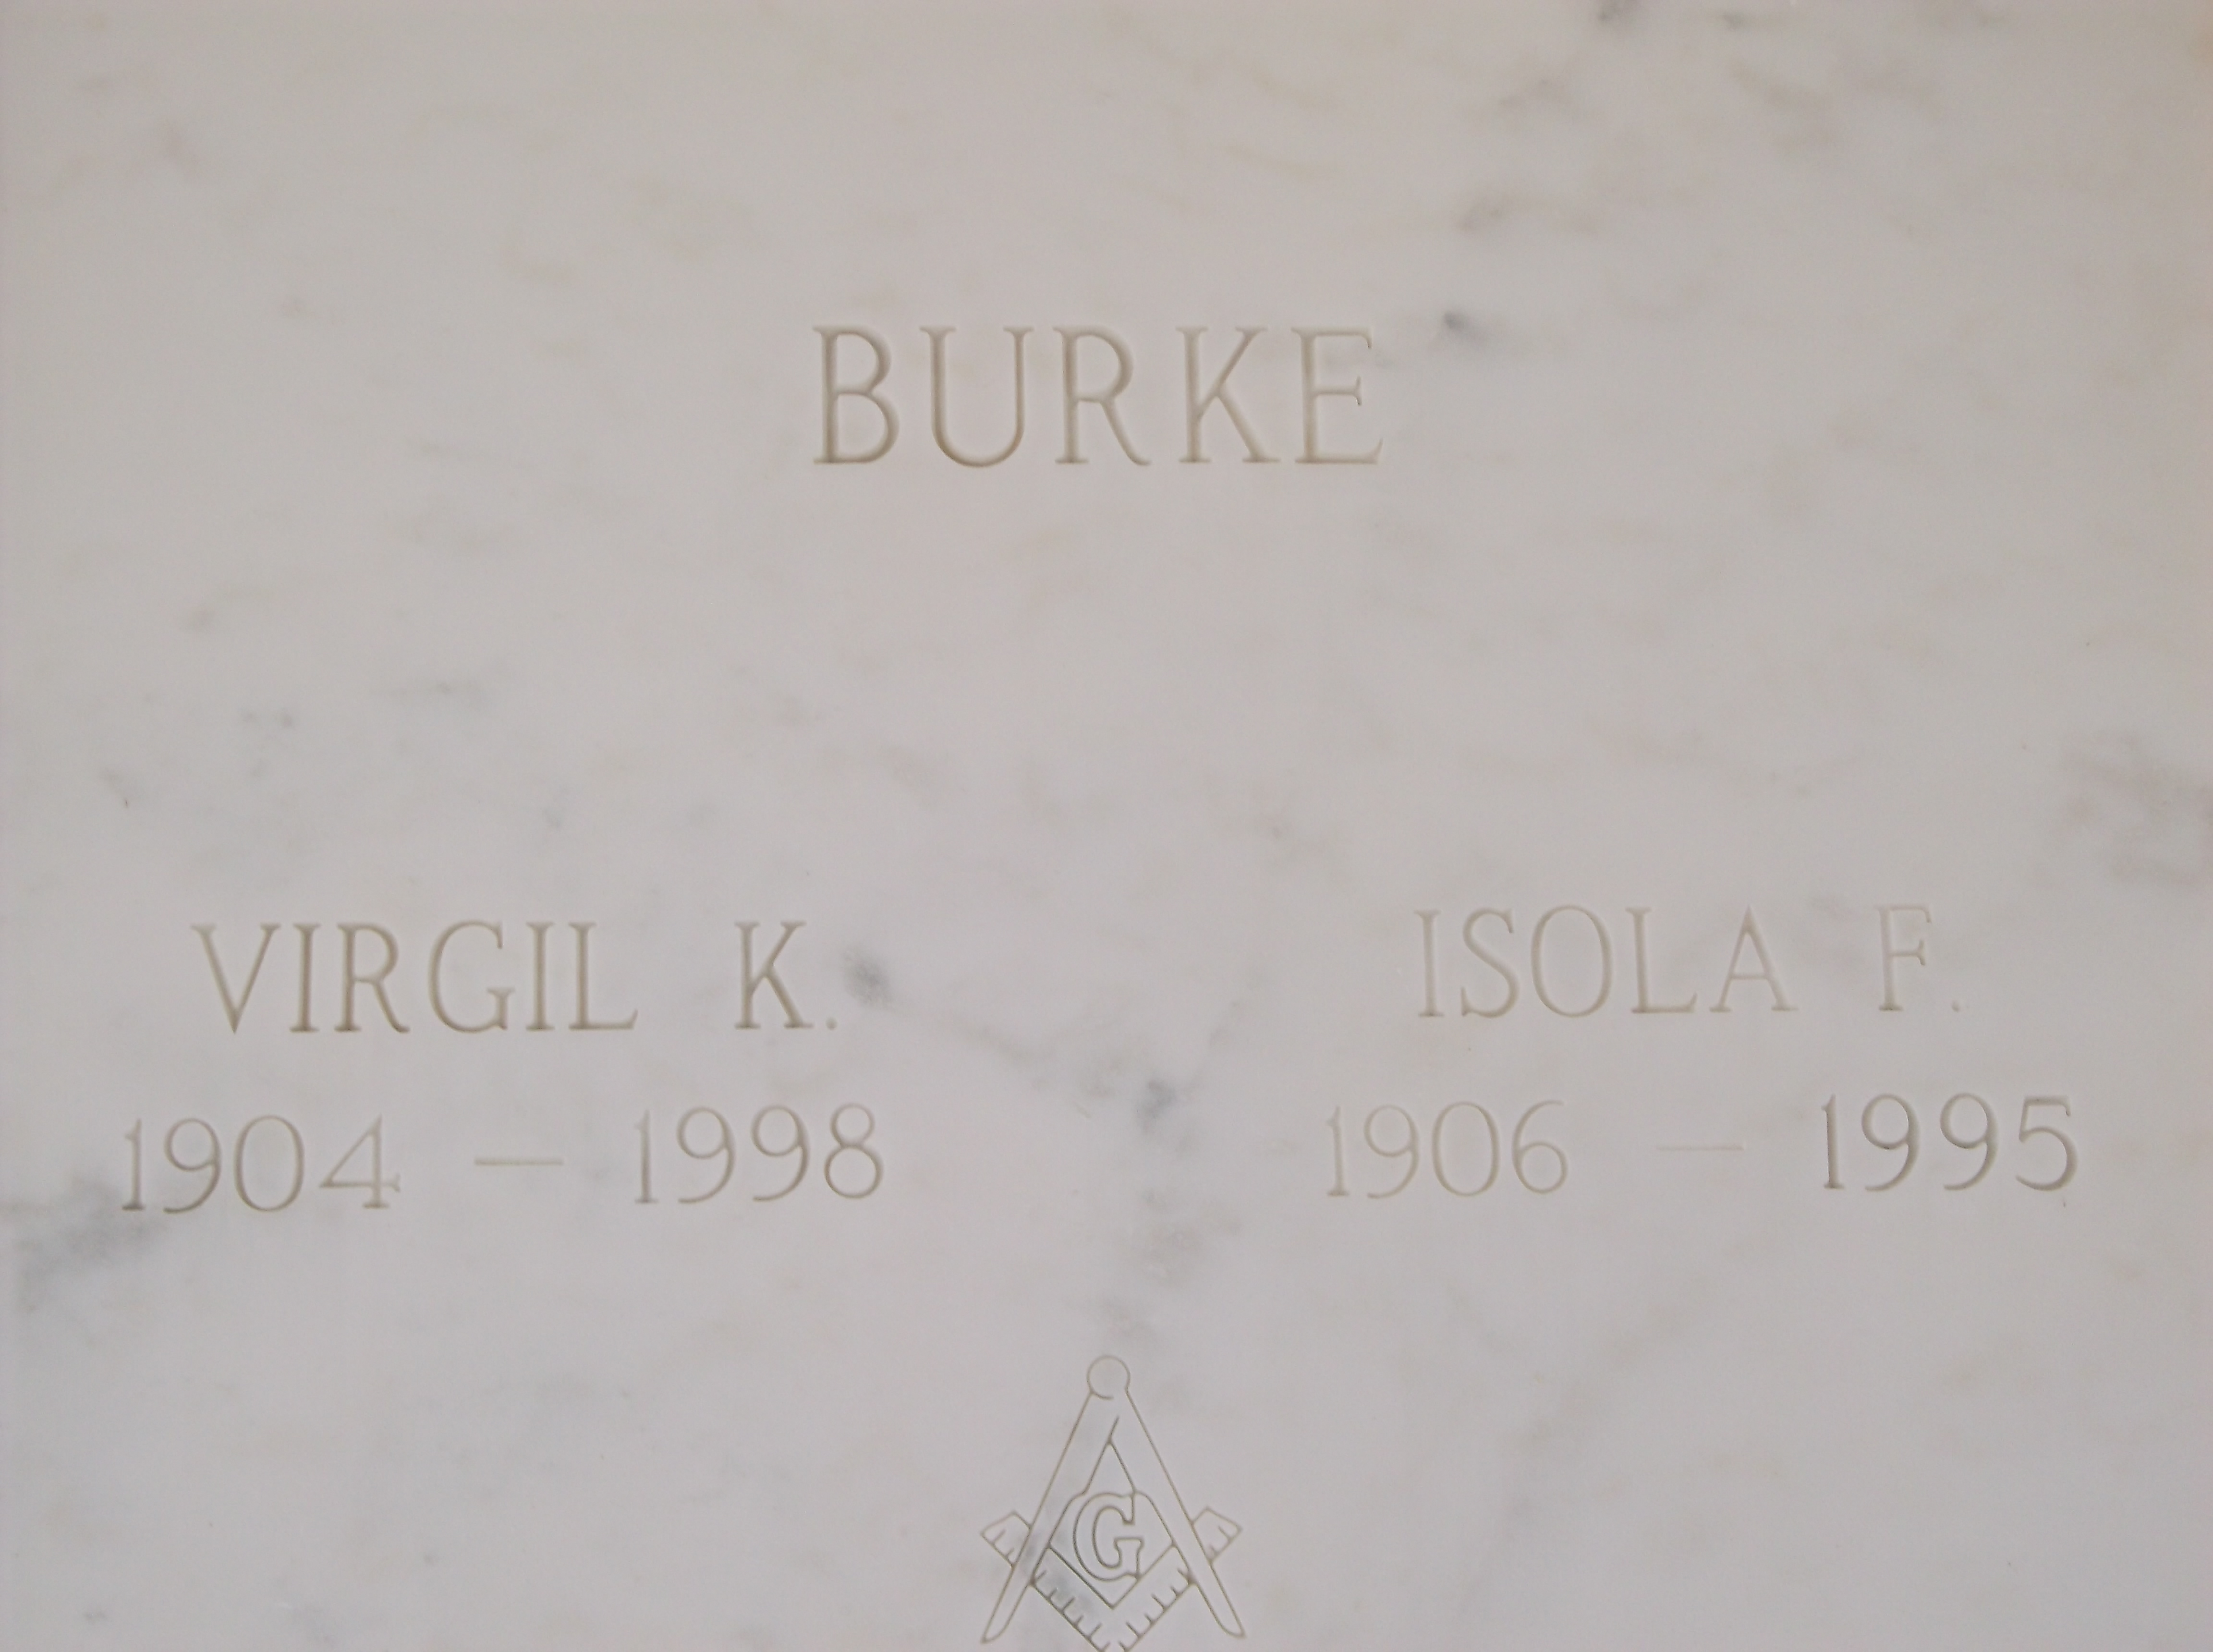 Virgil K Burke